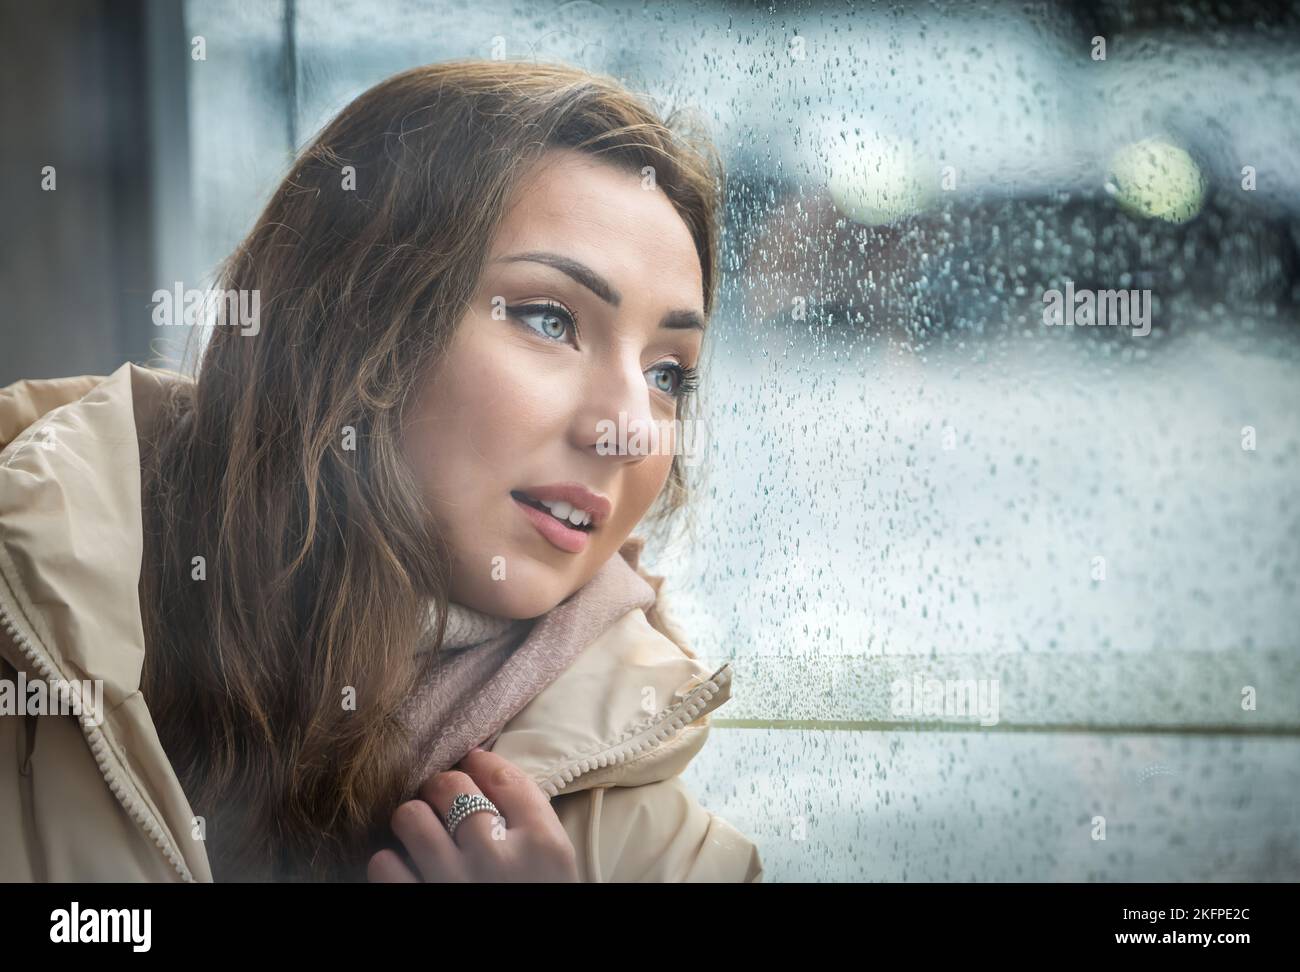 Une jolie jeune femme ou un mannequin attendant avec impatience à un arrêt de bus le jour des pluies, Édimbourg, Écosse, Royaume-Uni Banque D'Images